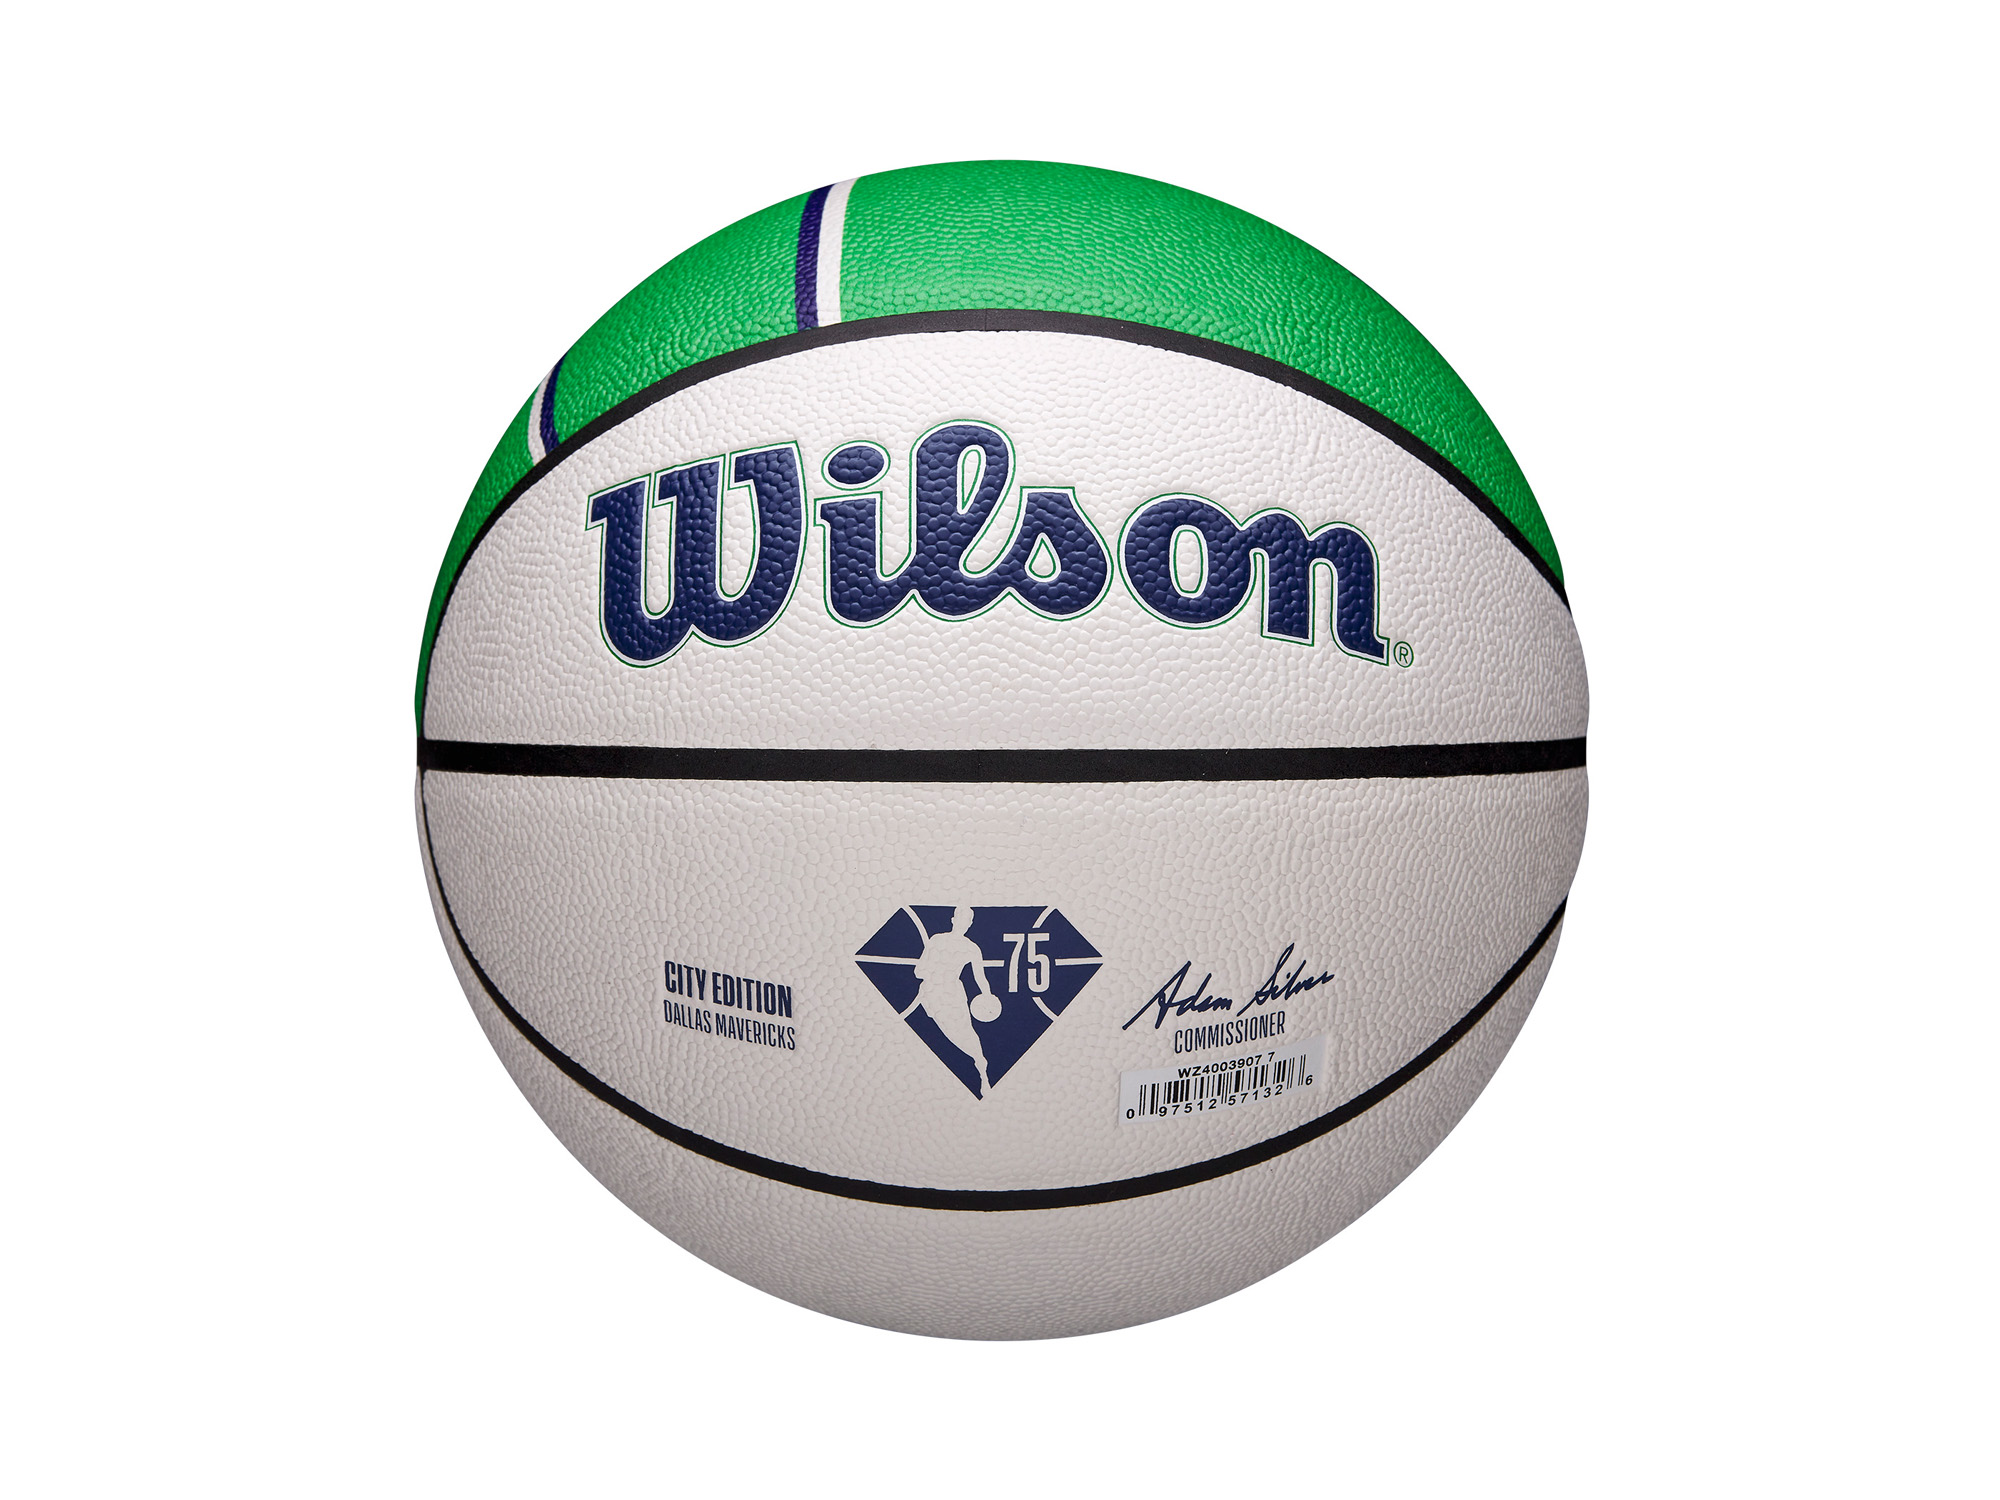 Wilson Dallas Mavericks NBA 75th City Collector Basketball